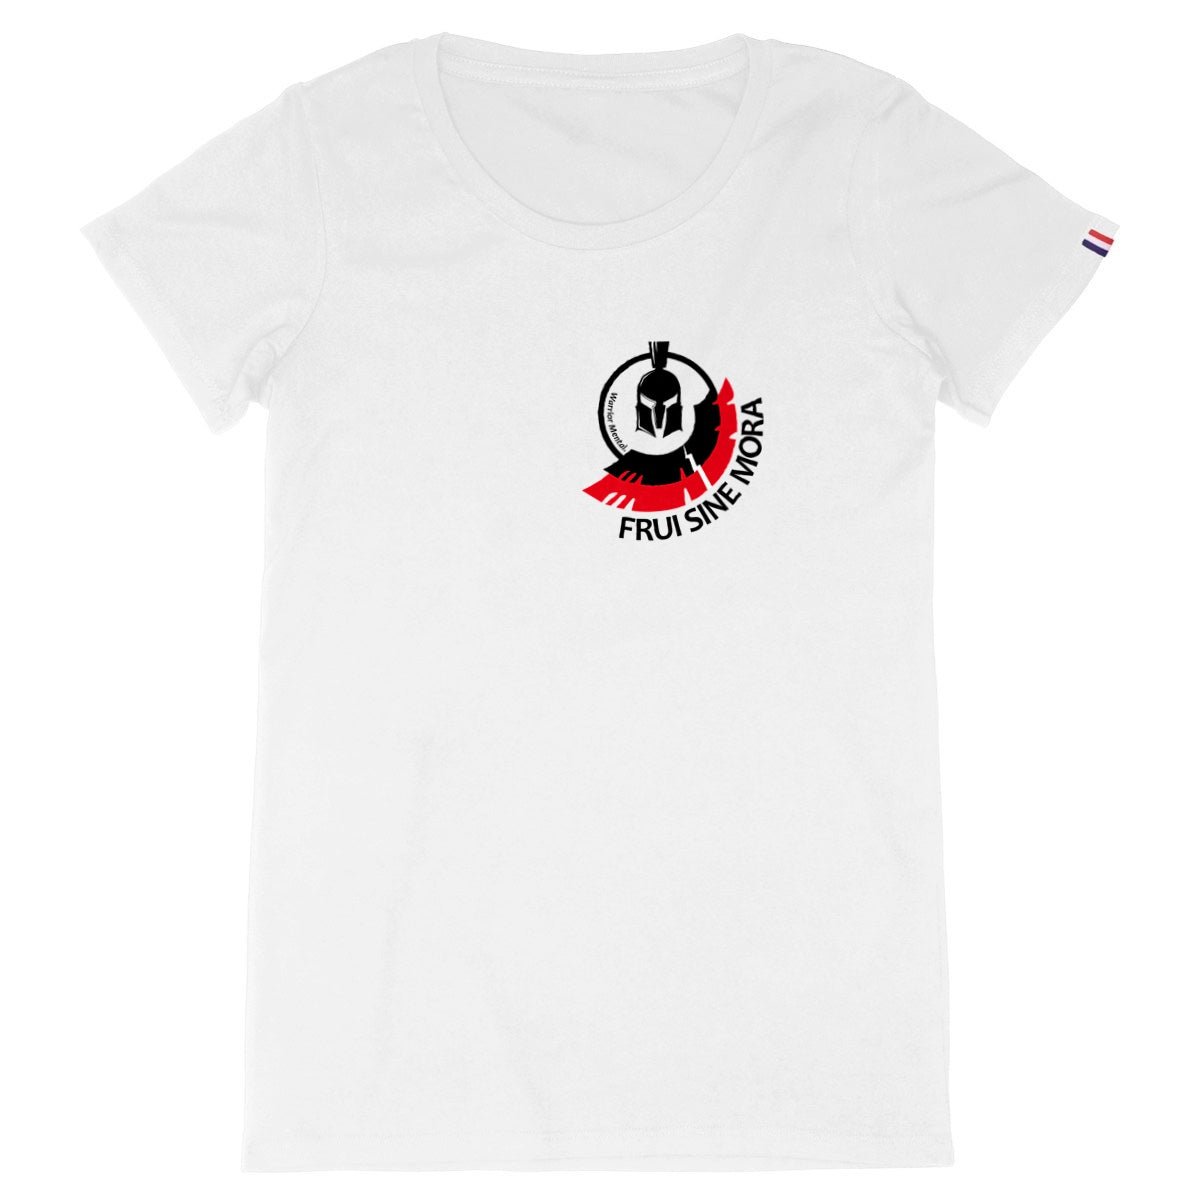 T-shirt Femme Made in France FRUI SINE MORA LOGO - FRUI SINE MORA